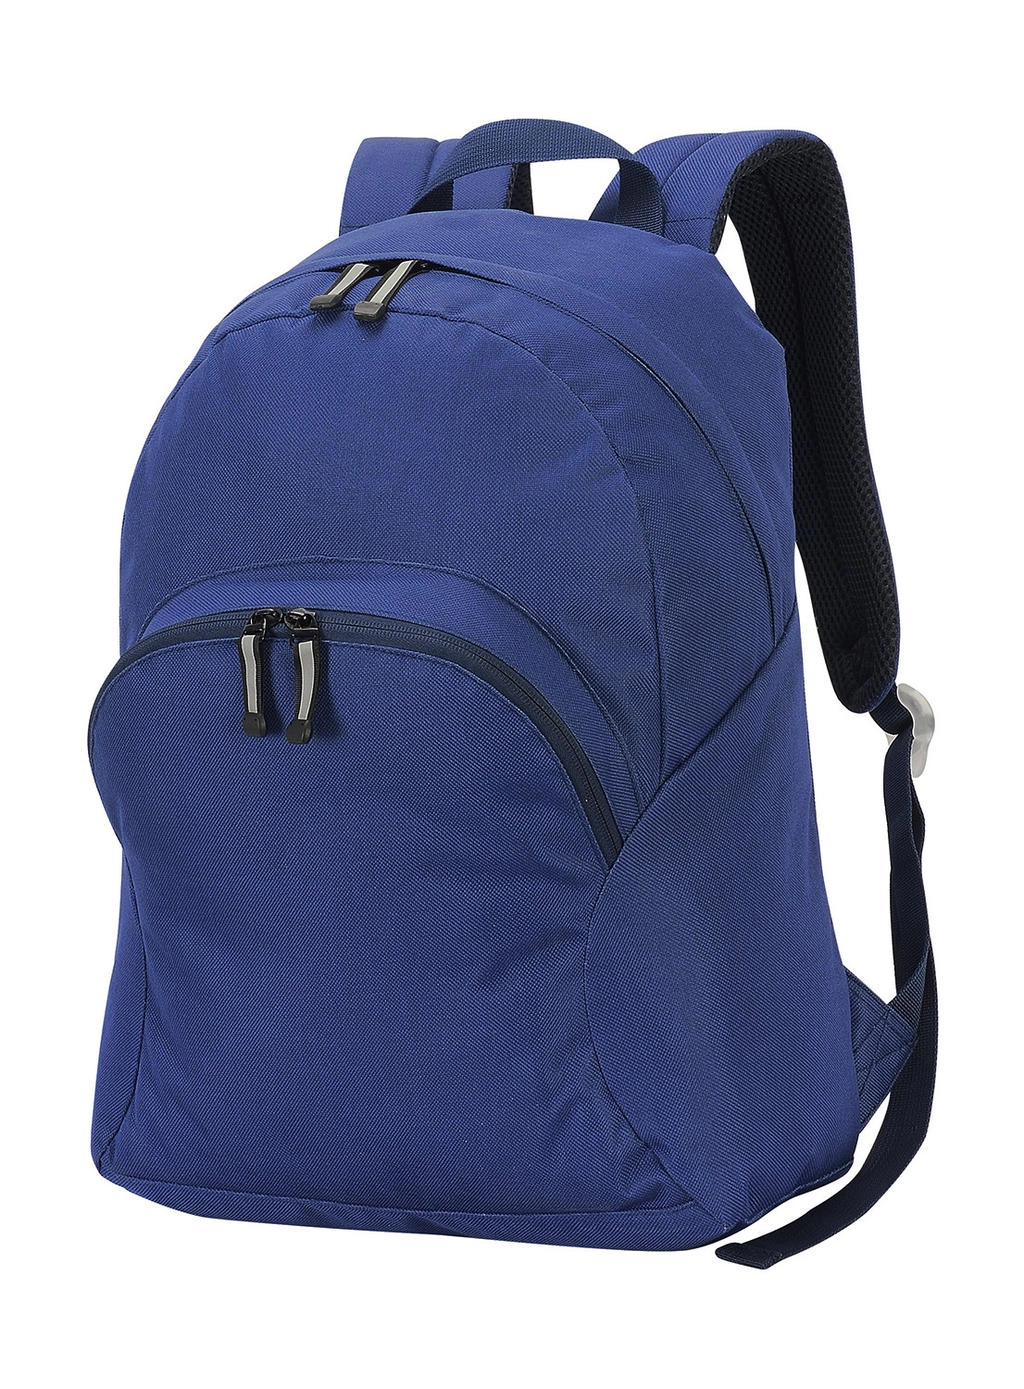 Milan Backpack zum Besticken und Bedrucken in der Farbe Navy mit Ihren Logo, Schriftzug oder Motiv.